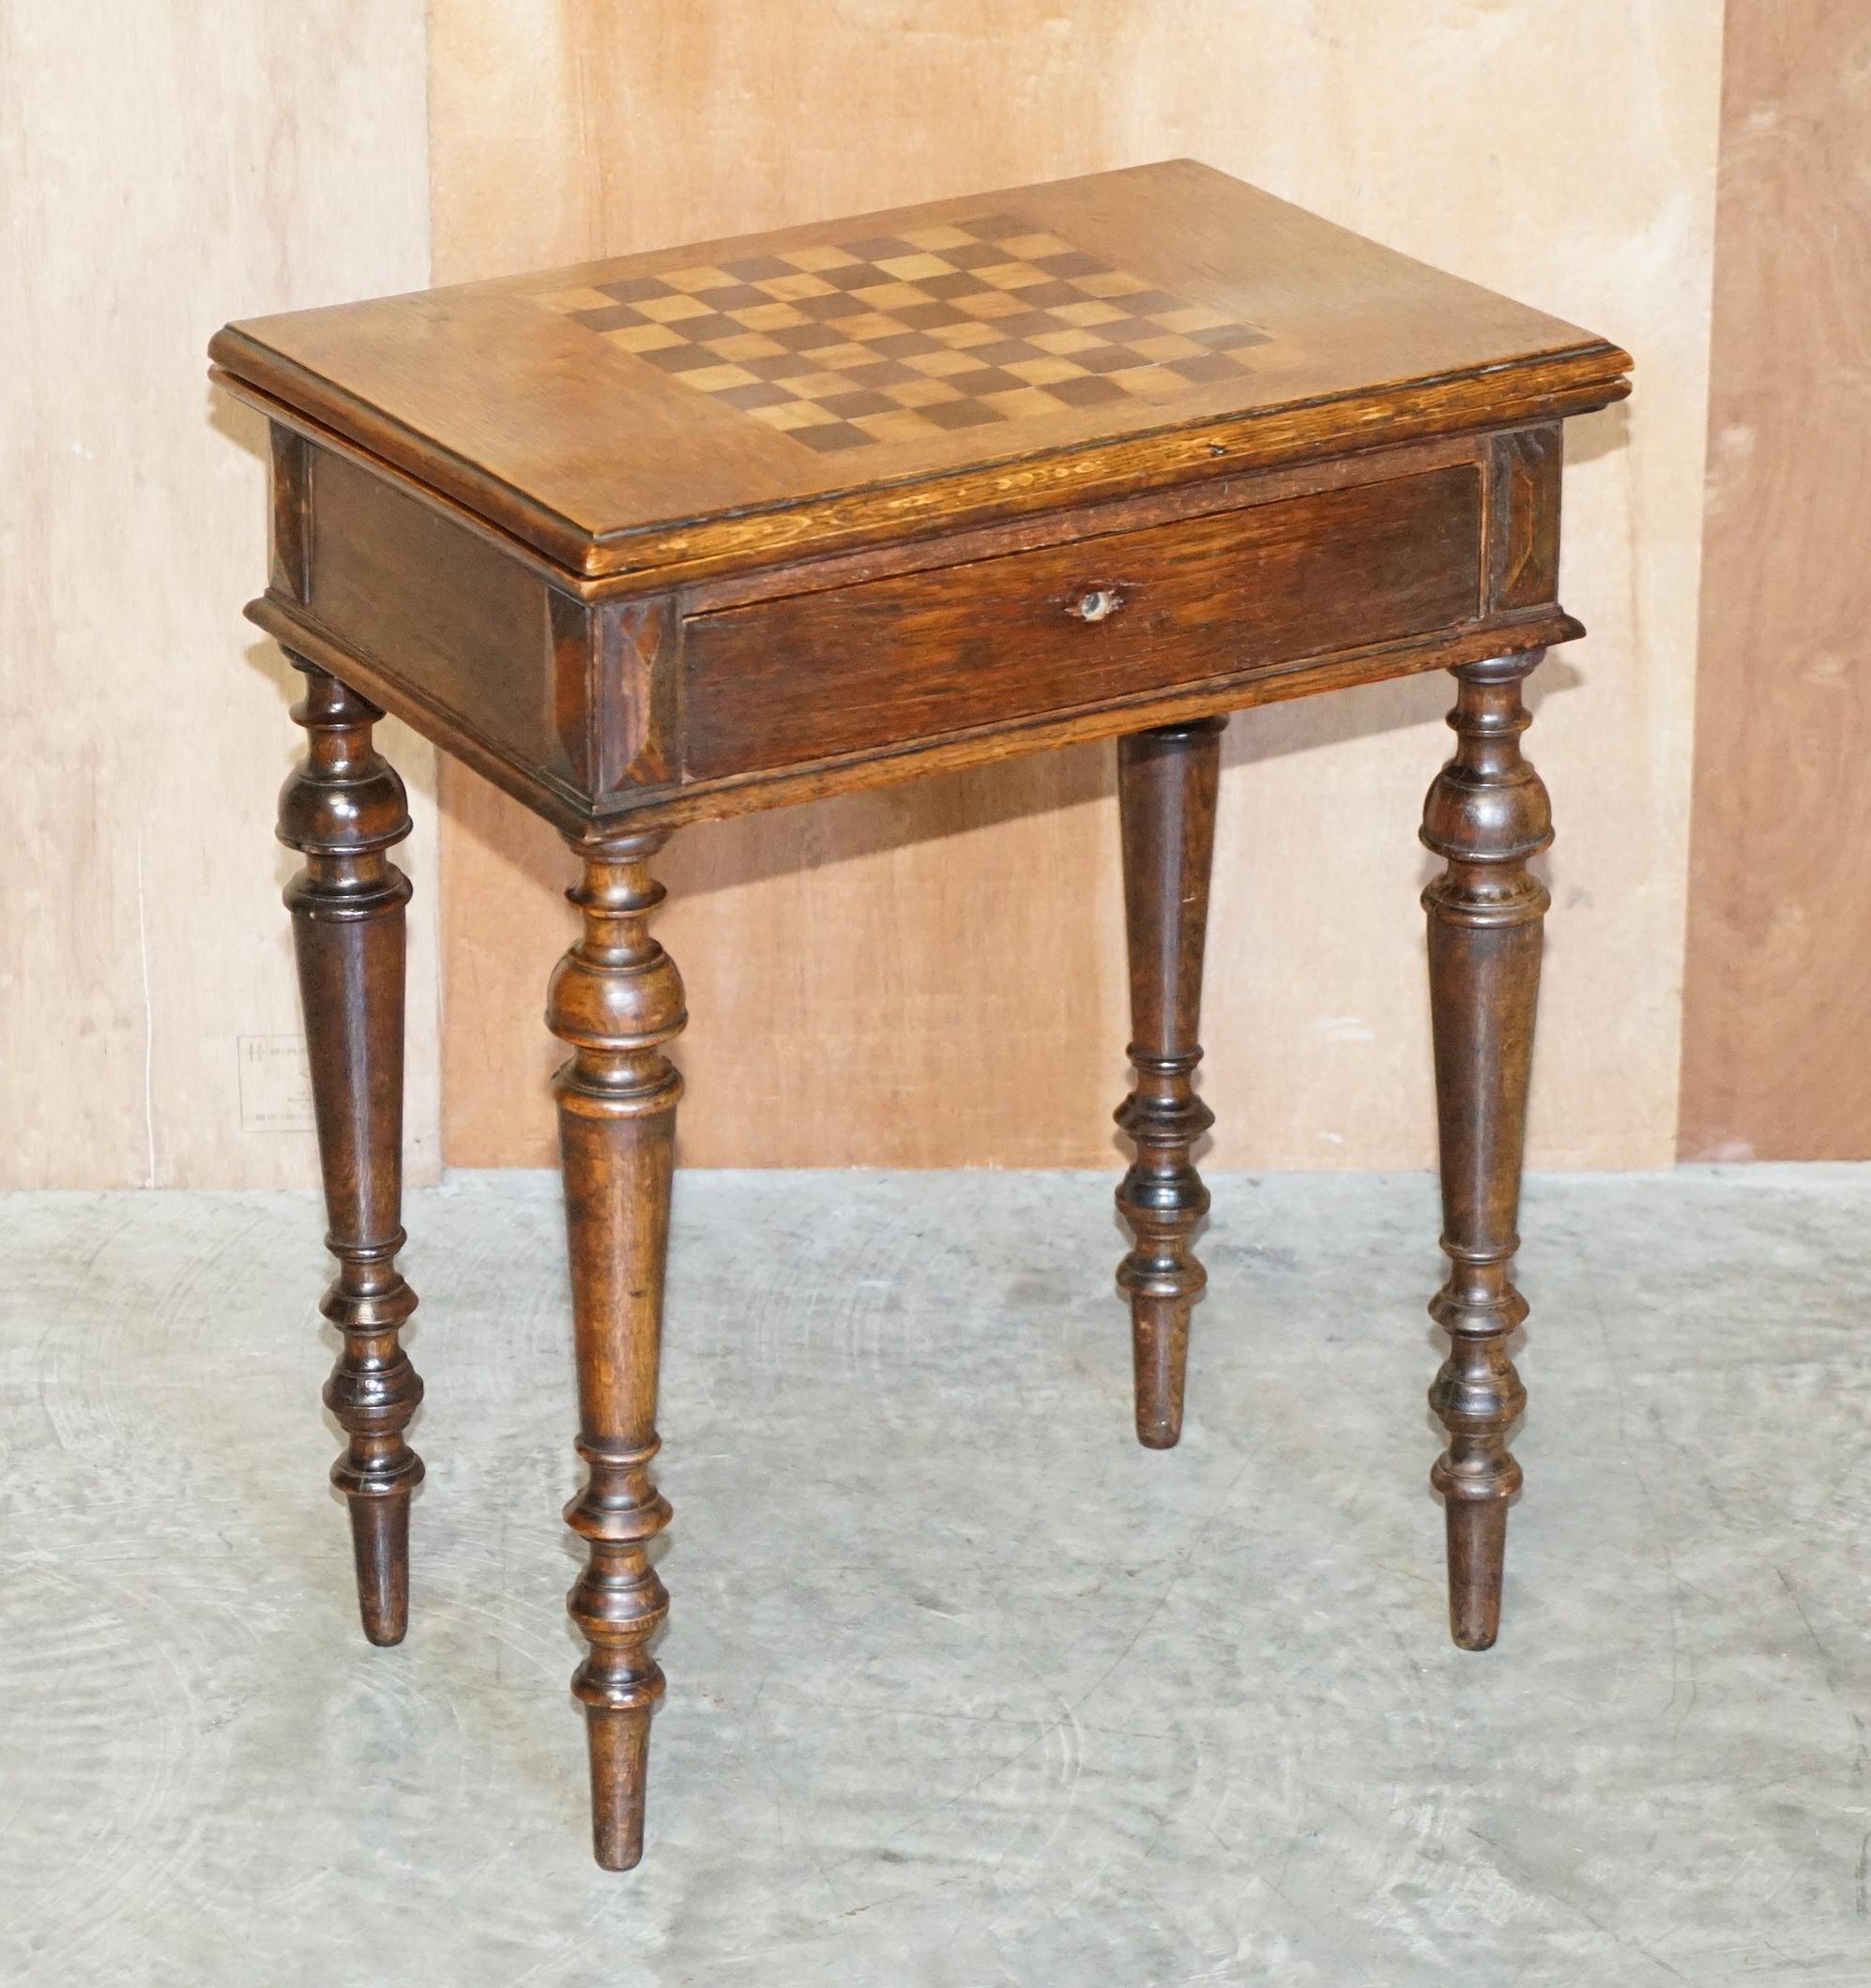 Wir freuen uns, diesen sehr schönen antiken viktorianischen englischen Eichenschachtisch mit aufklappbarer Tischplatte anbieten zu können

Ein gut aussehendes und gut gemachtes Stück, wie Sie sehen können die wichtigsten oben ist für Schach oder